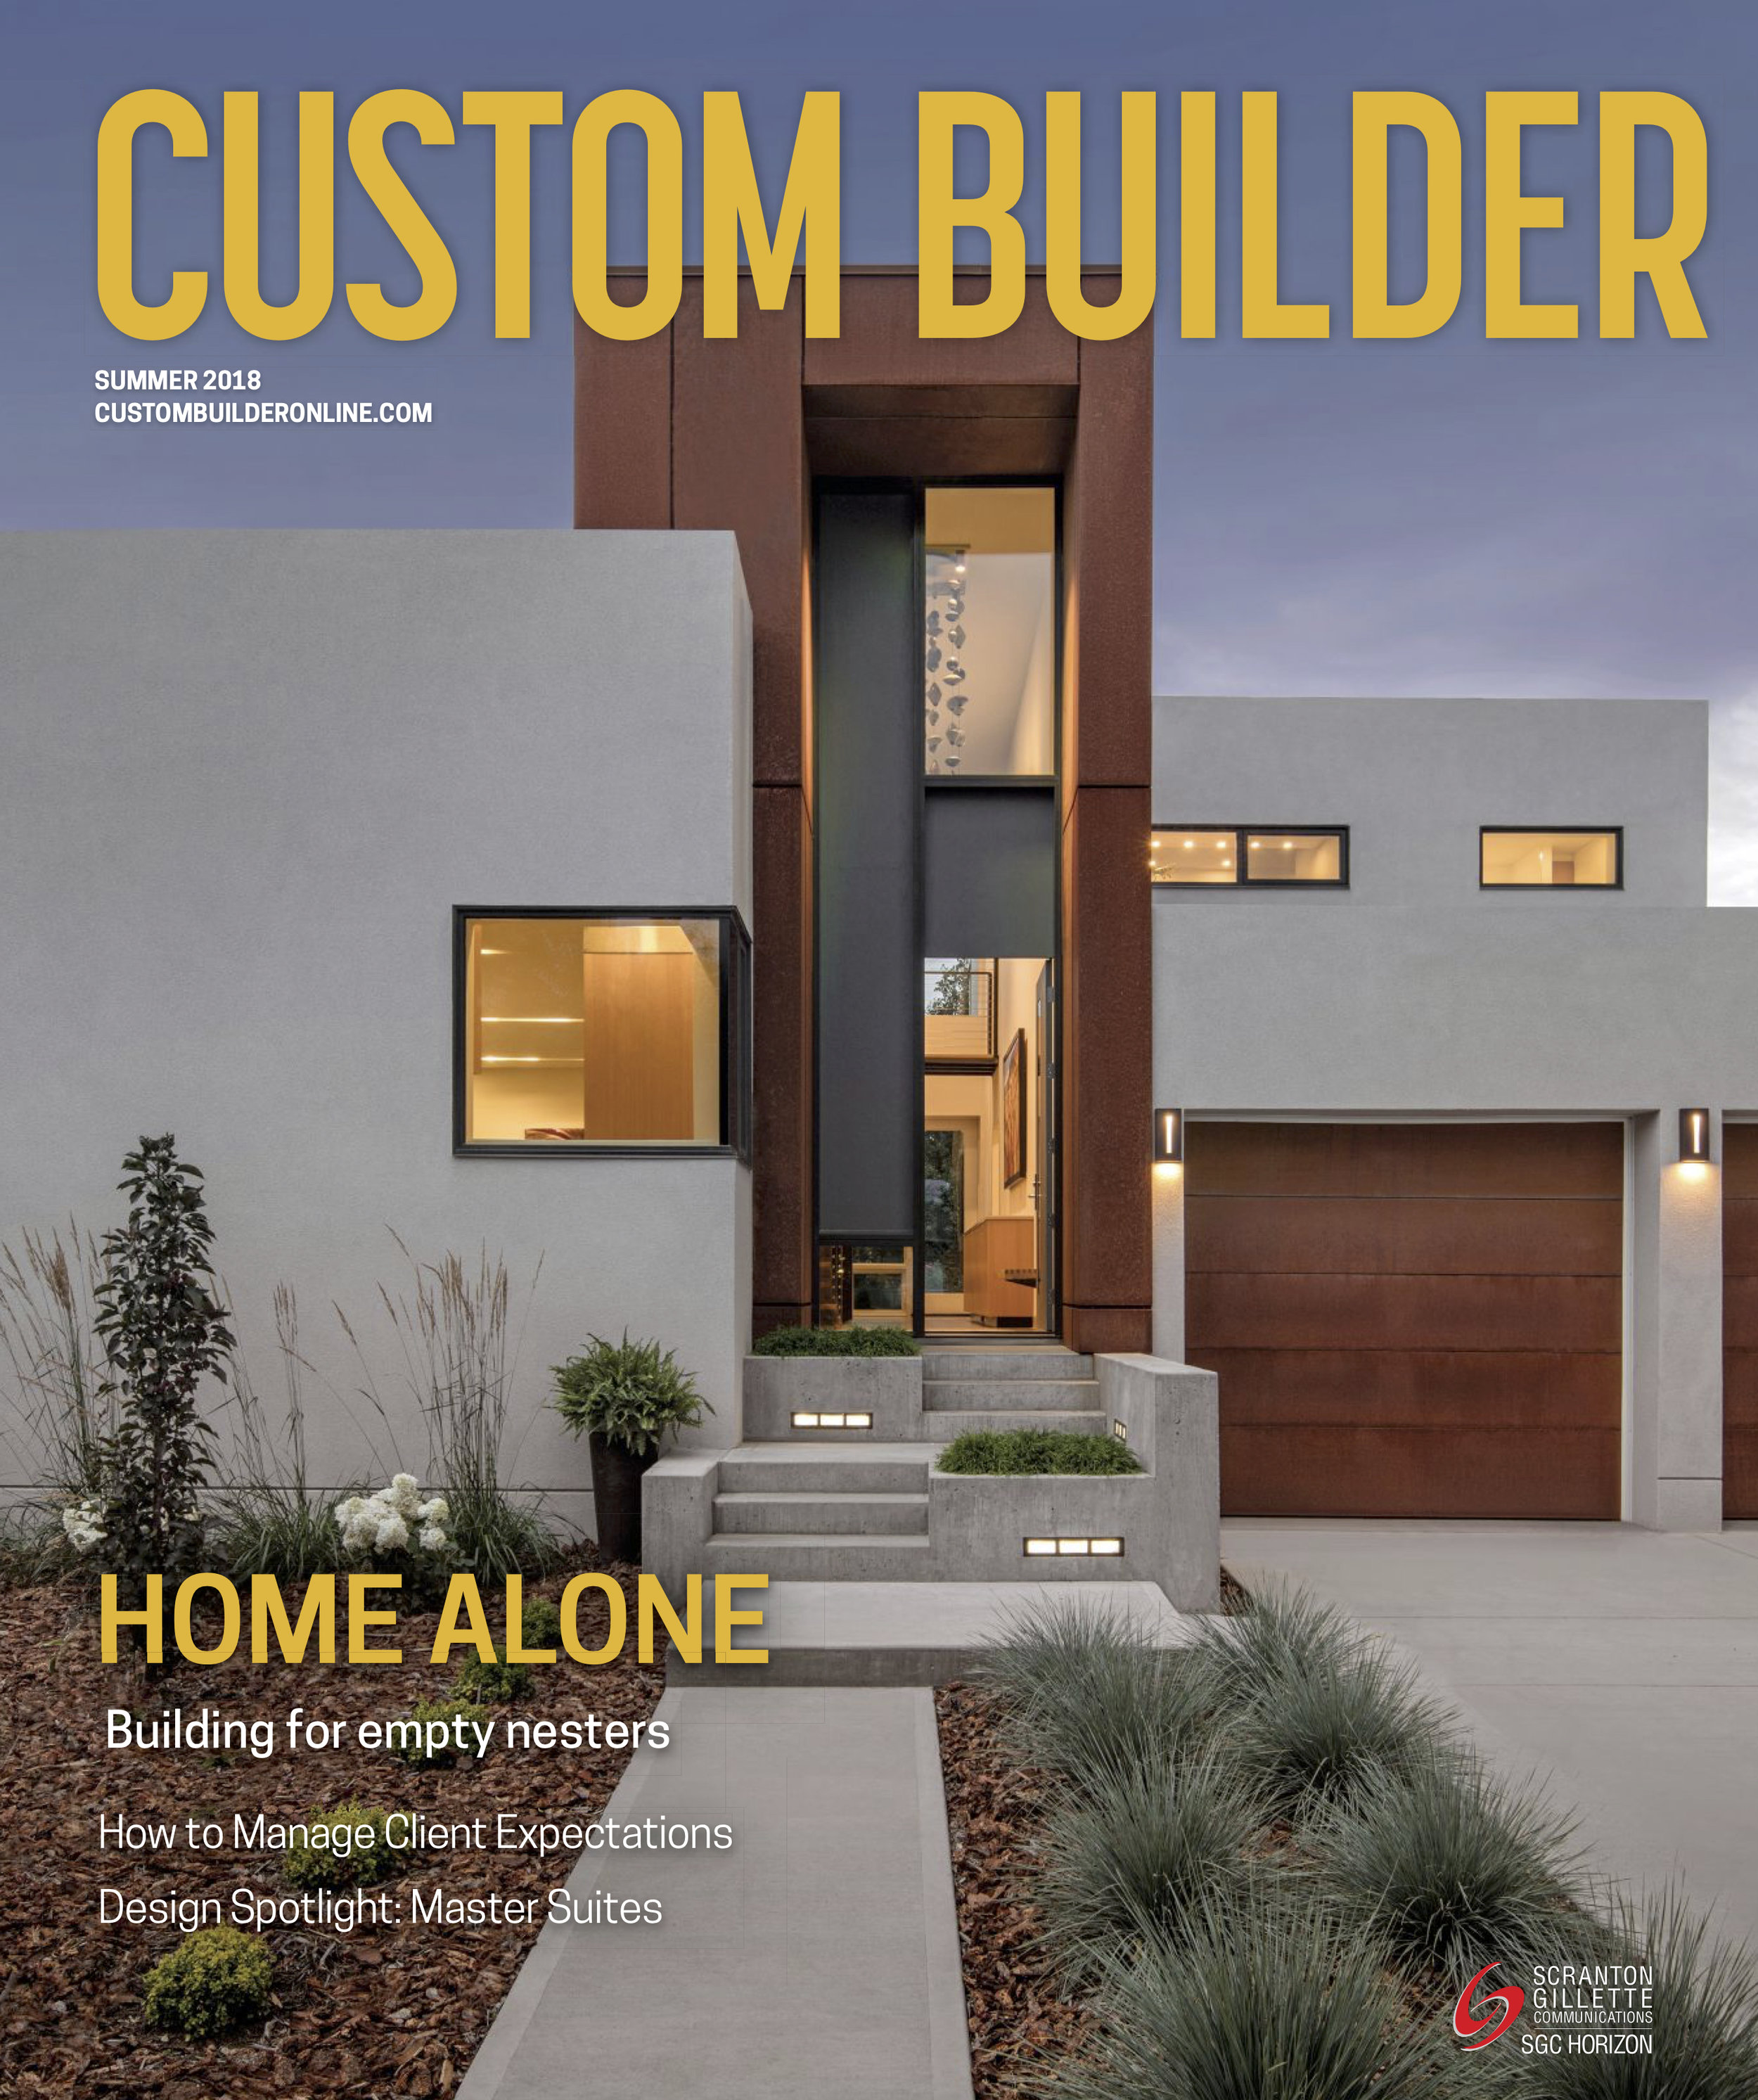 custom builder magazine summer 2018 cover.jpg